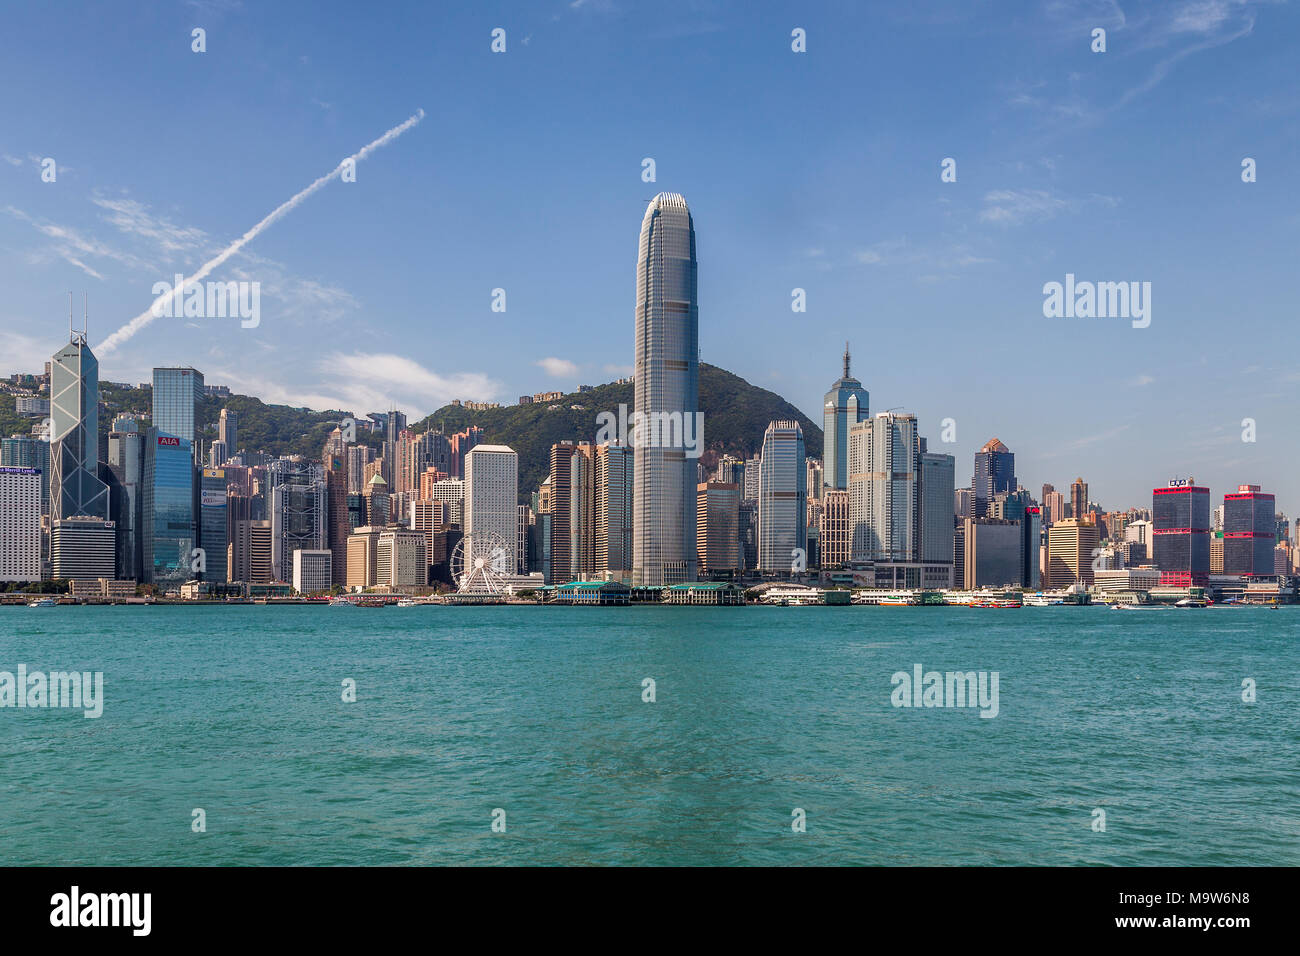 Le port de Hong Kong où les gratte-ciel de l'île de Hong Kong se dresse majestueusement en face de Victoria Peak. Banque D'Images